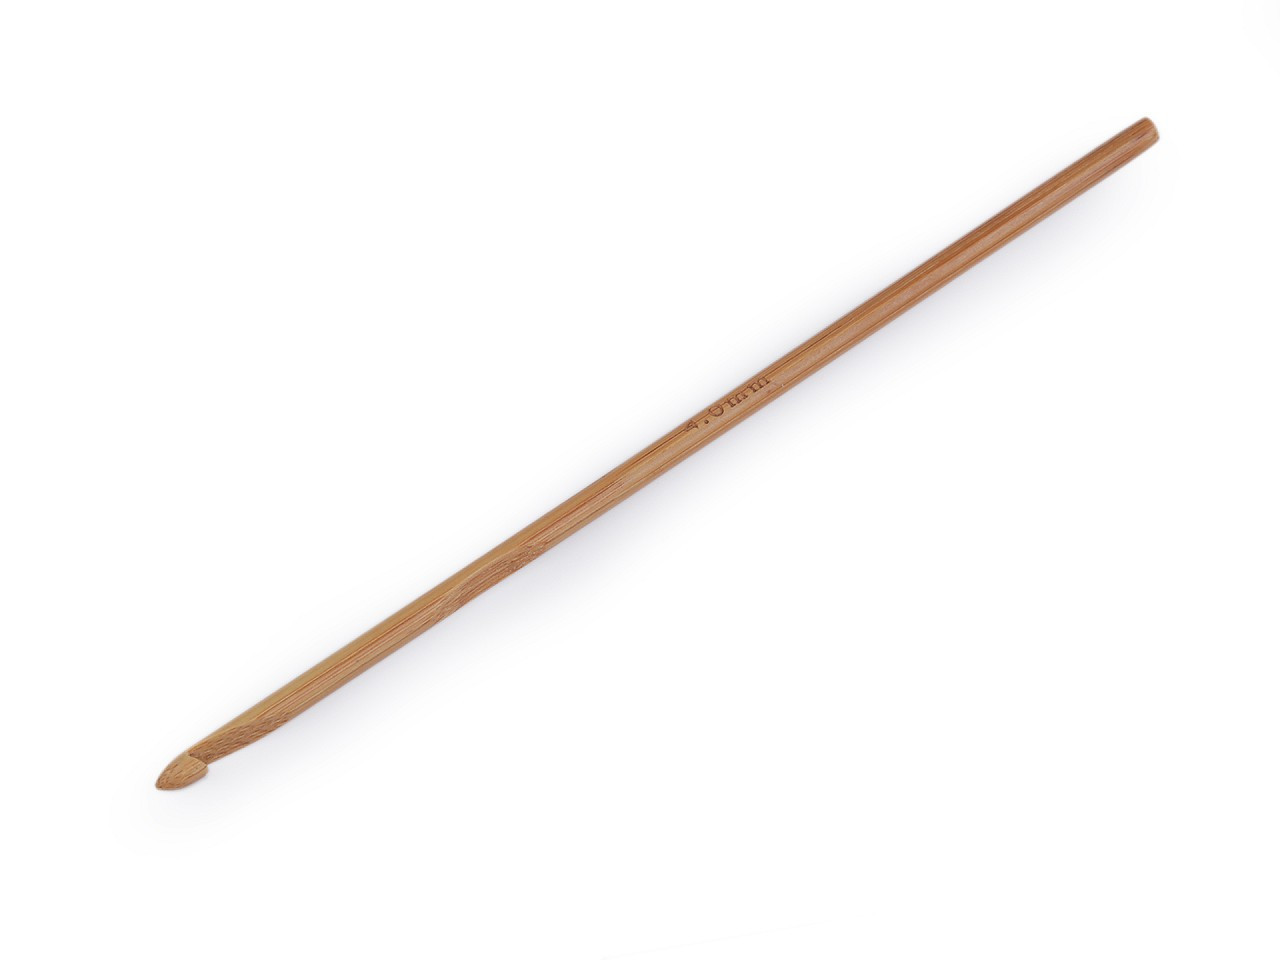 Bambusový háček na háčkování vel. 3; 4; 4,5; 5; 5,5, barva 4 (4 mm) bambus tmavý